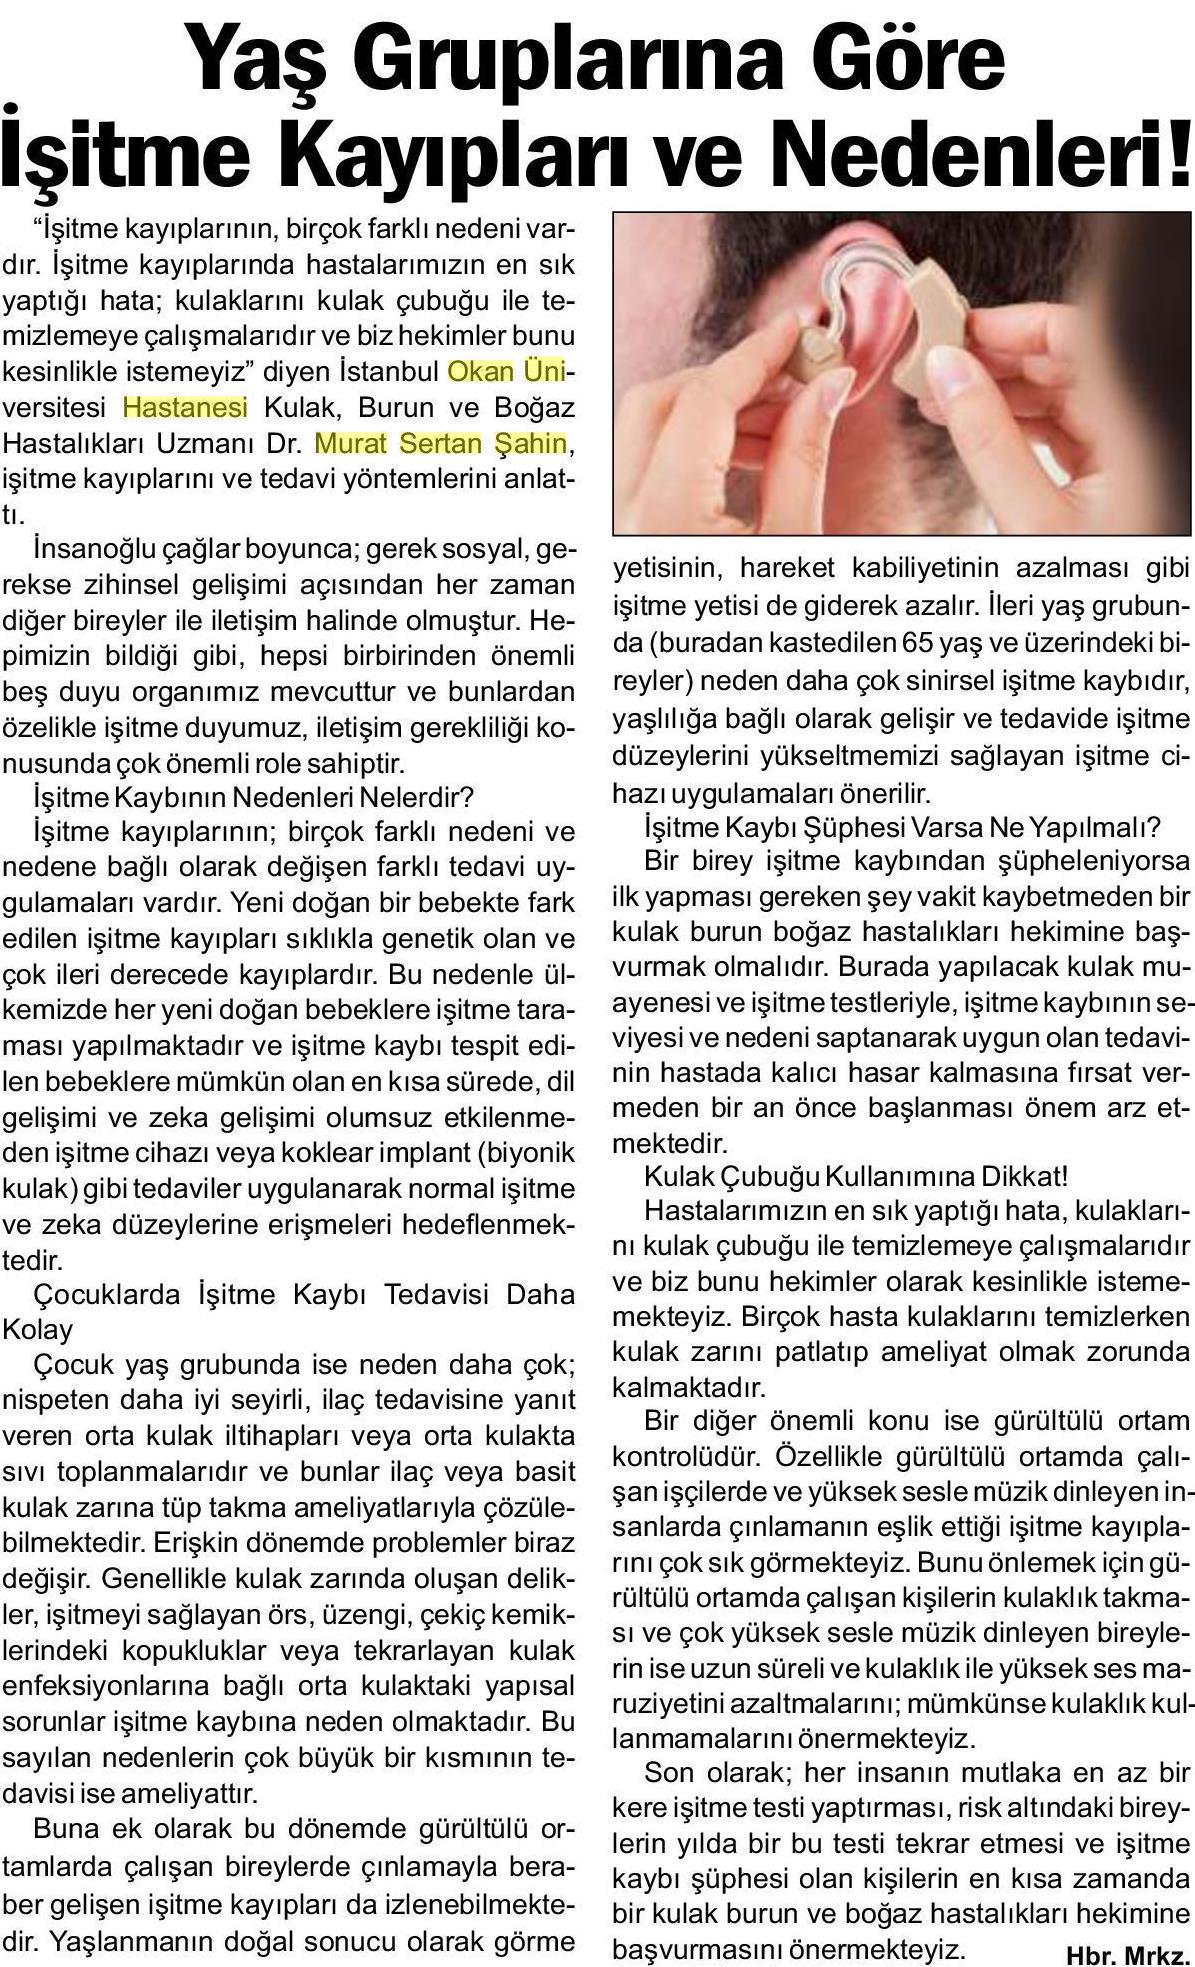 02.03.2019	Uzunköprü Gazetesi	YAŞ GRUPLARINA GÖRE İŞİTME KAYIPLARI VE NEDENLERİ!